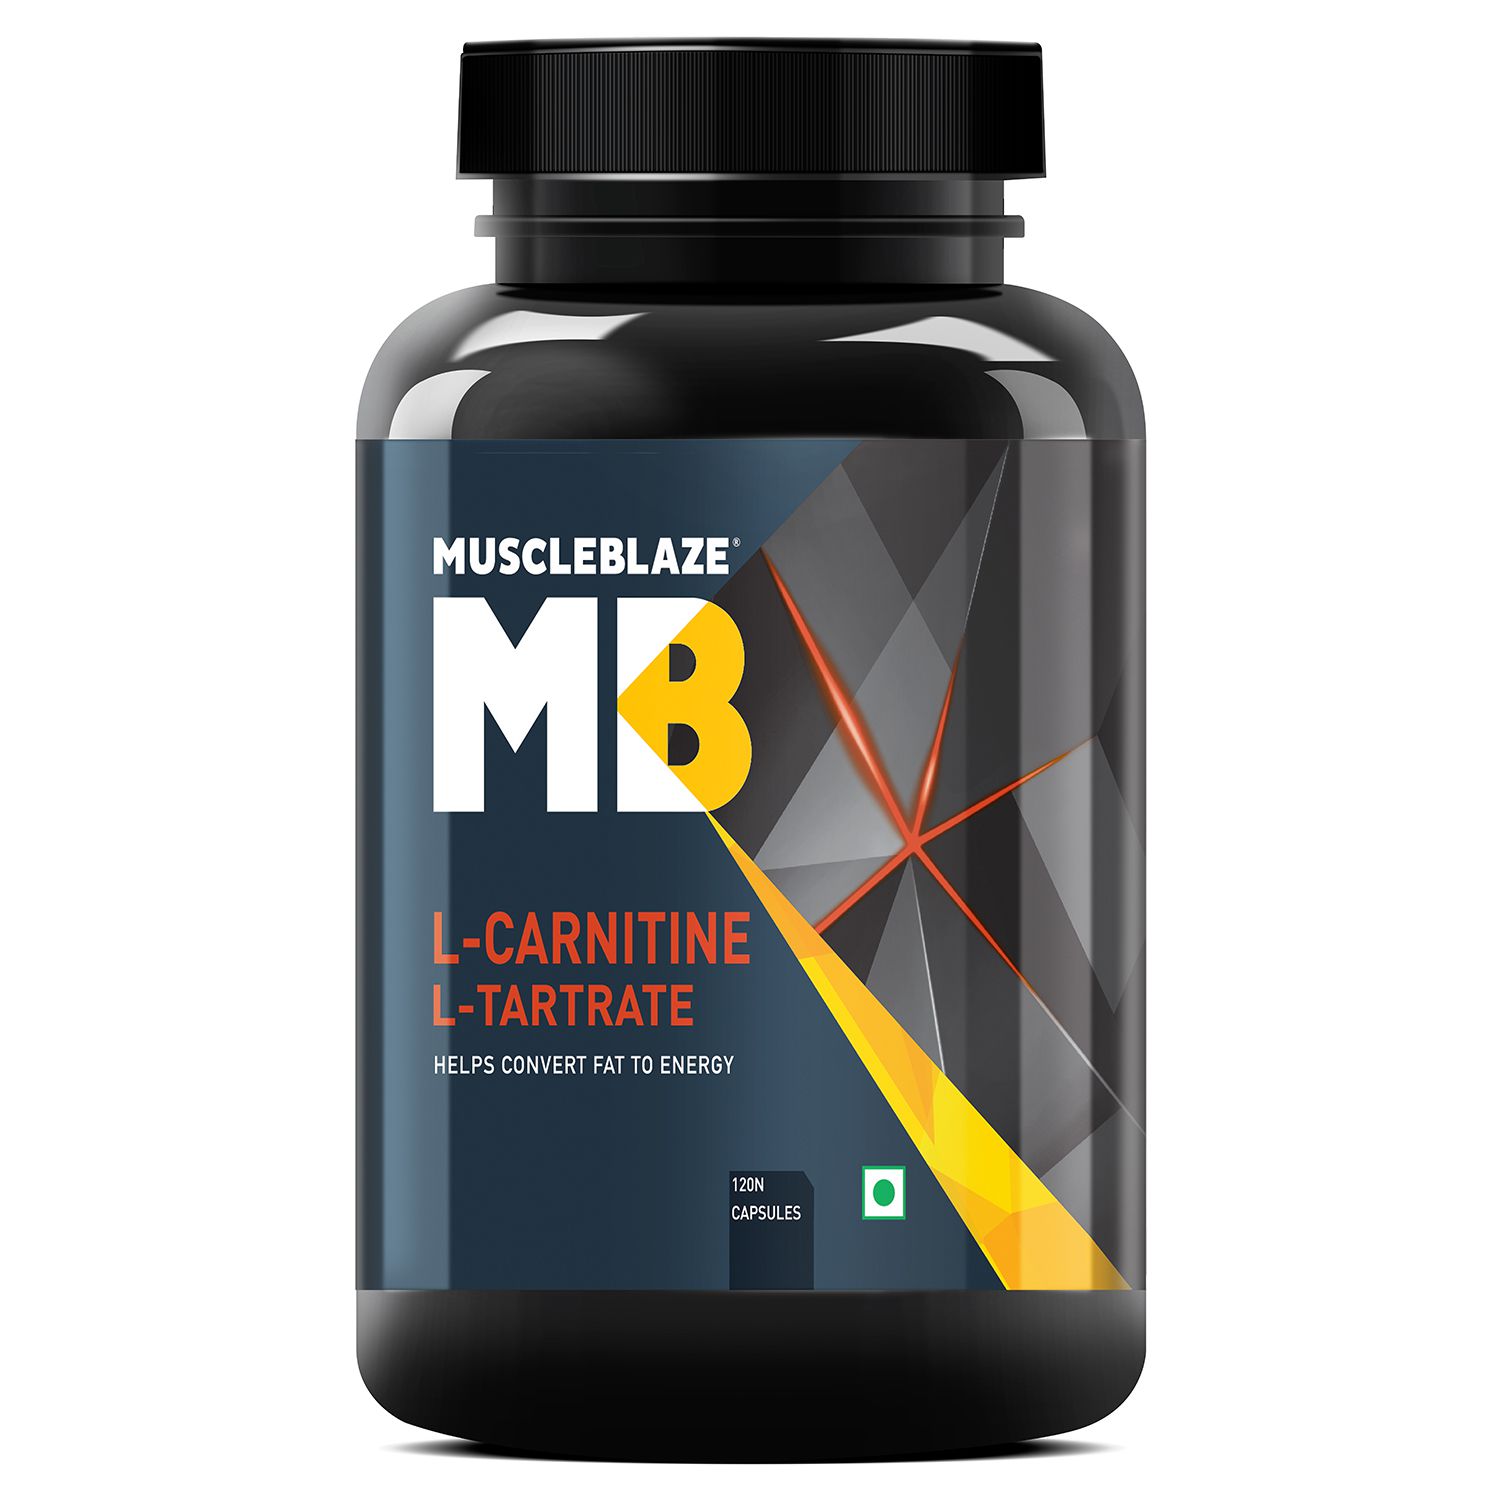 MuscleBlaze L-Carnitine L-Tartrate, 120 capsules